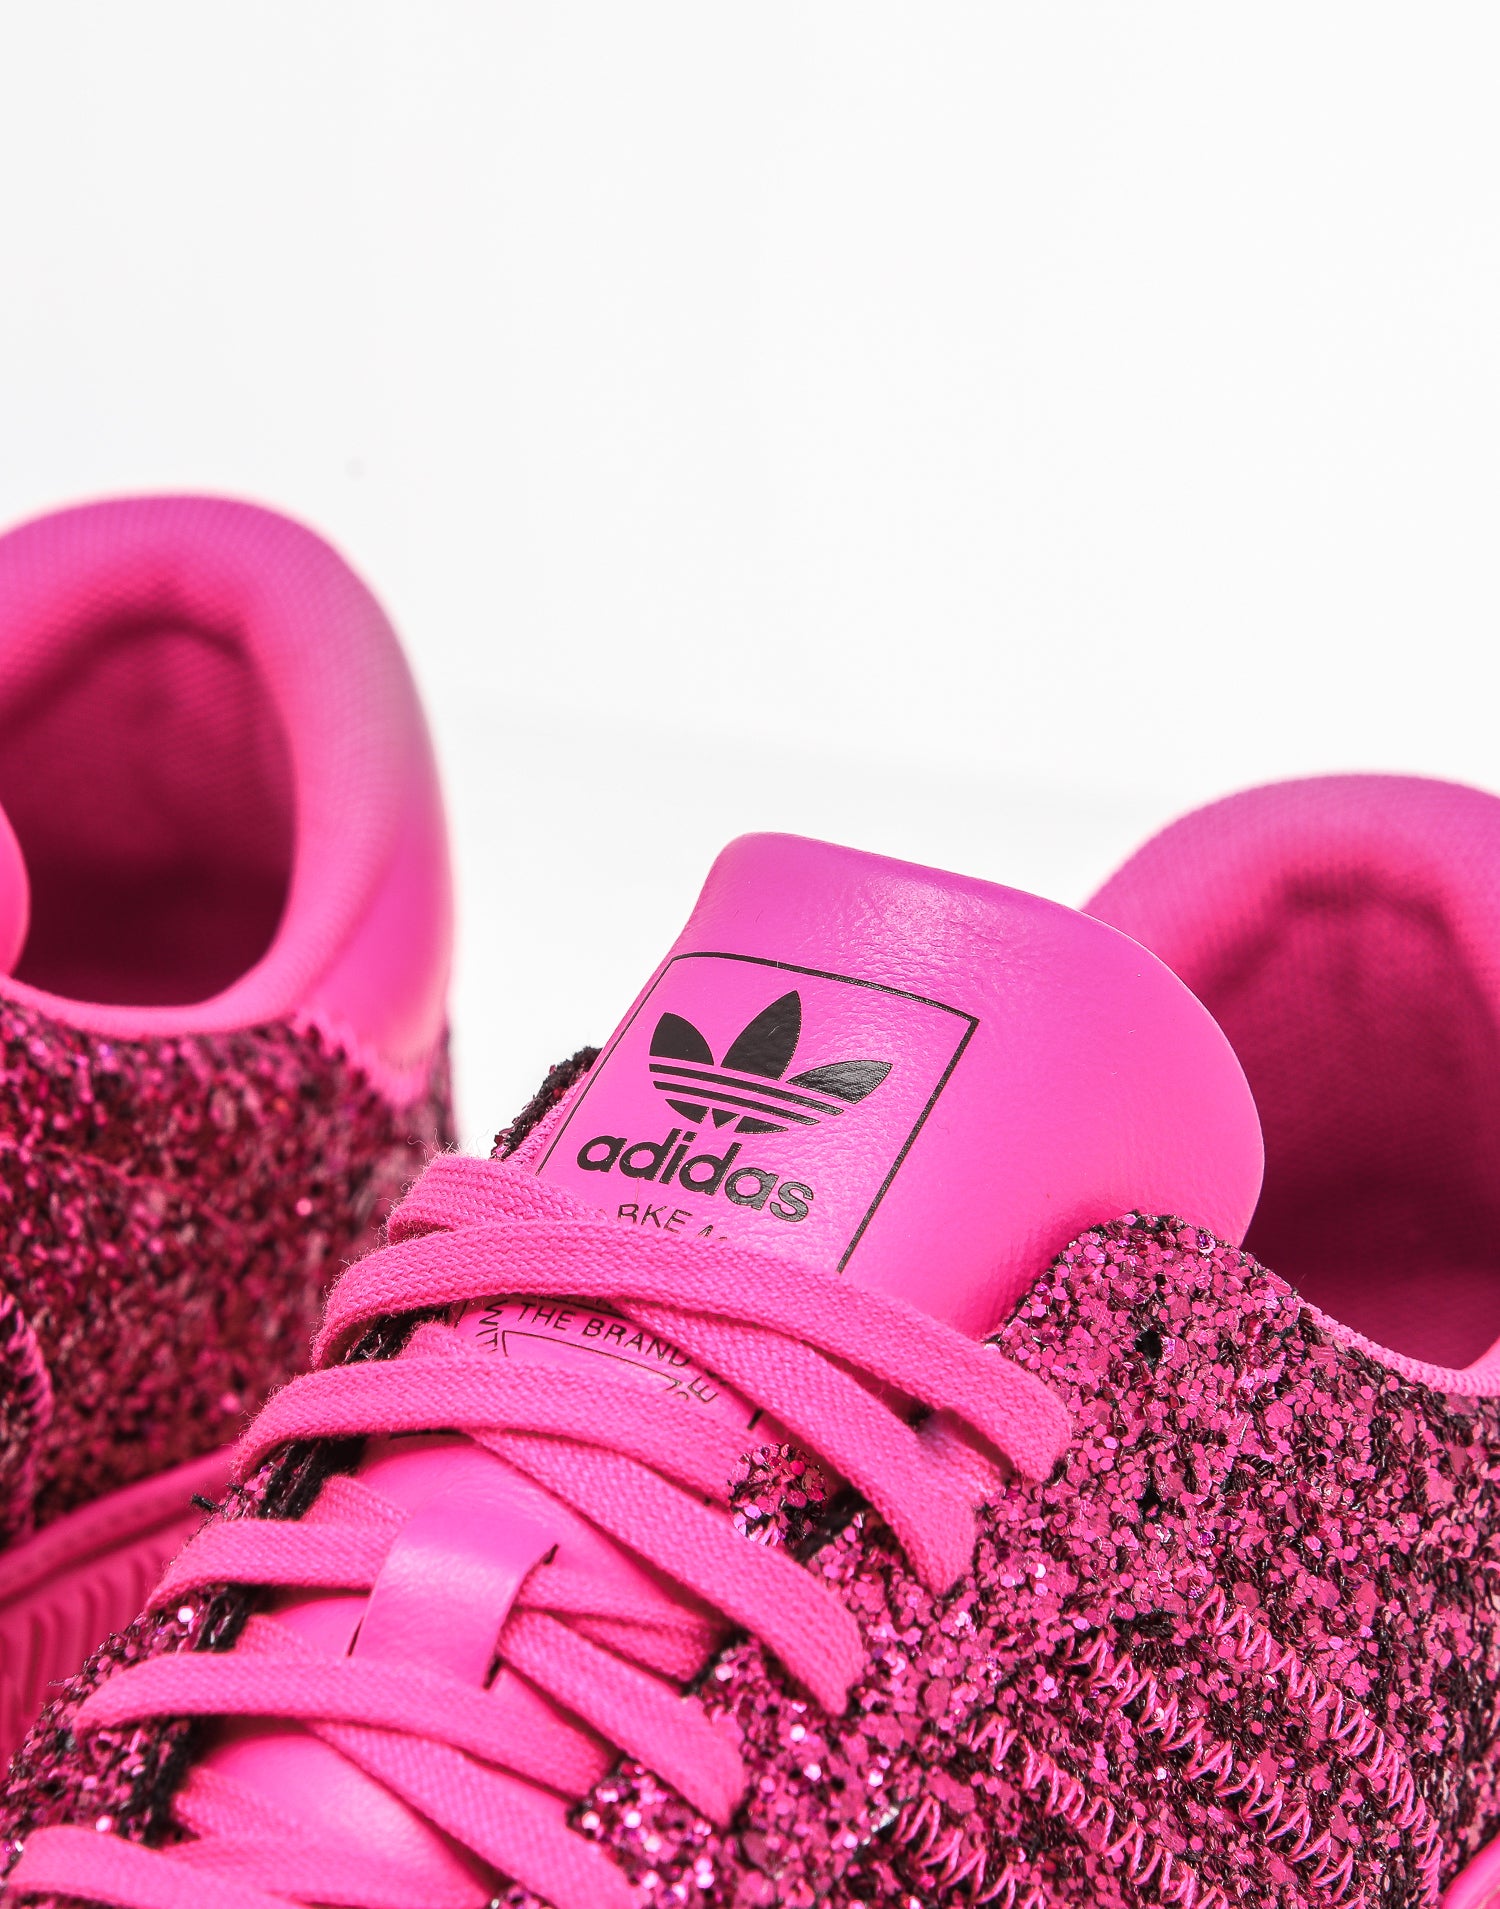 adidas samba rose shock pink